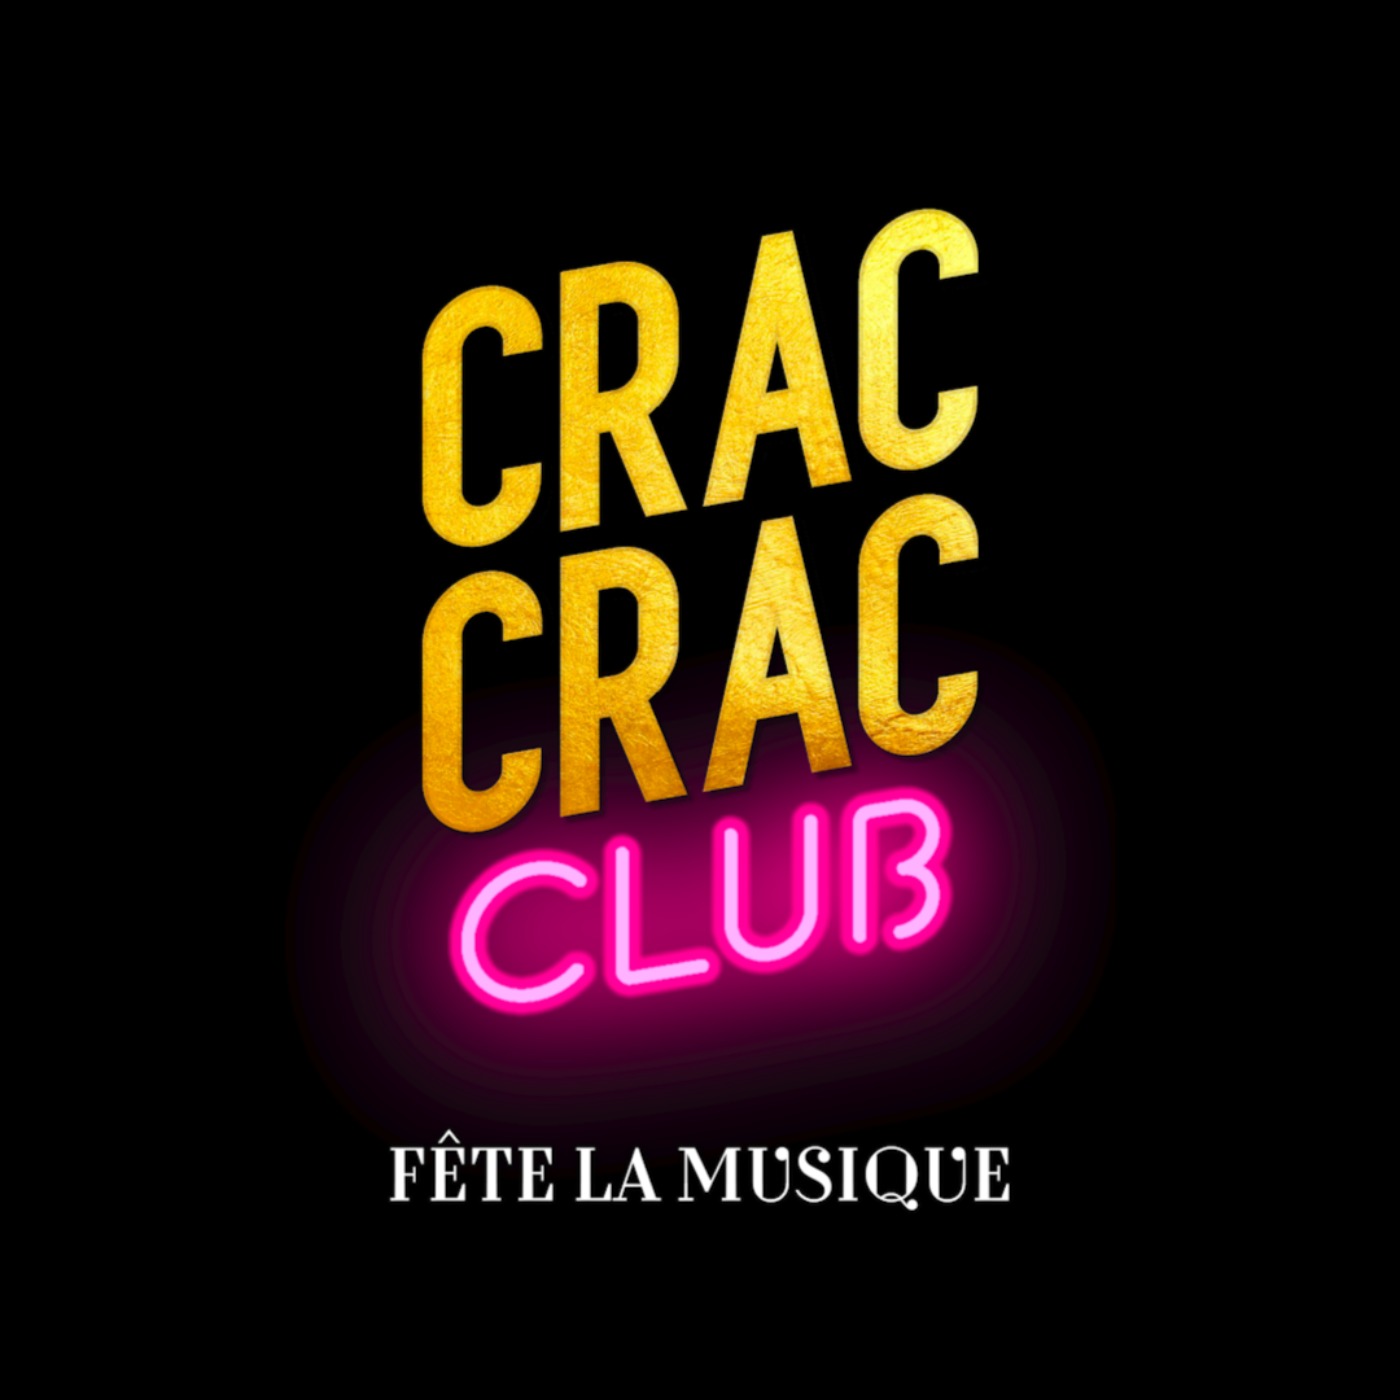 CRAC CRAC CLUB FÊTE LA MUSIQUE